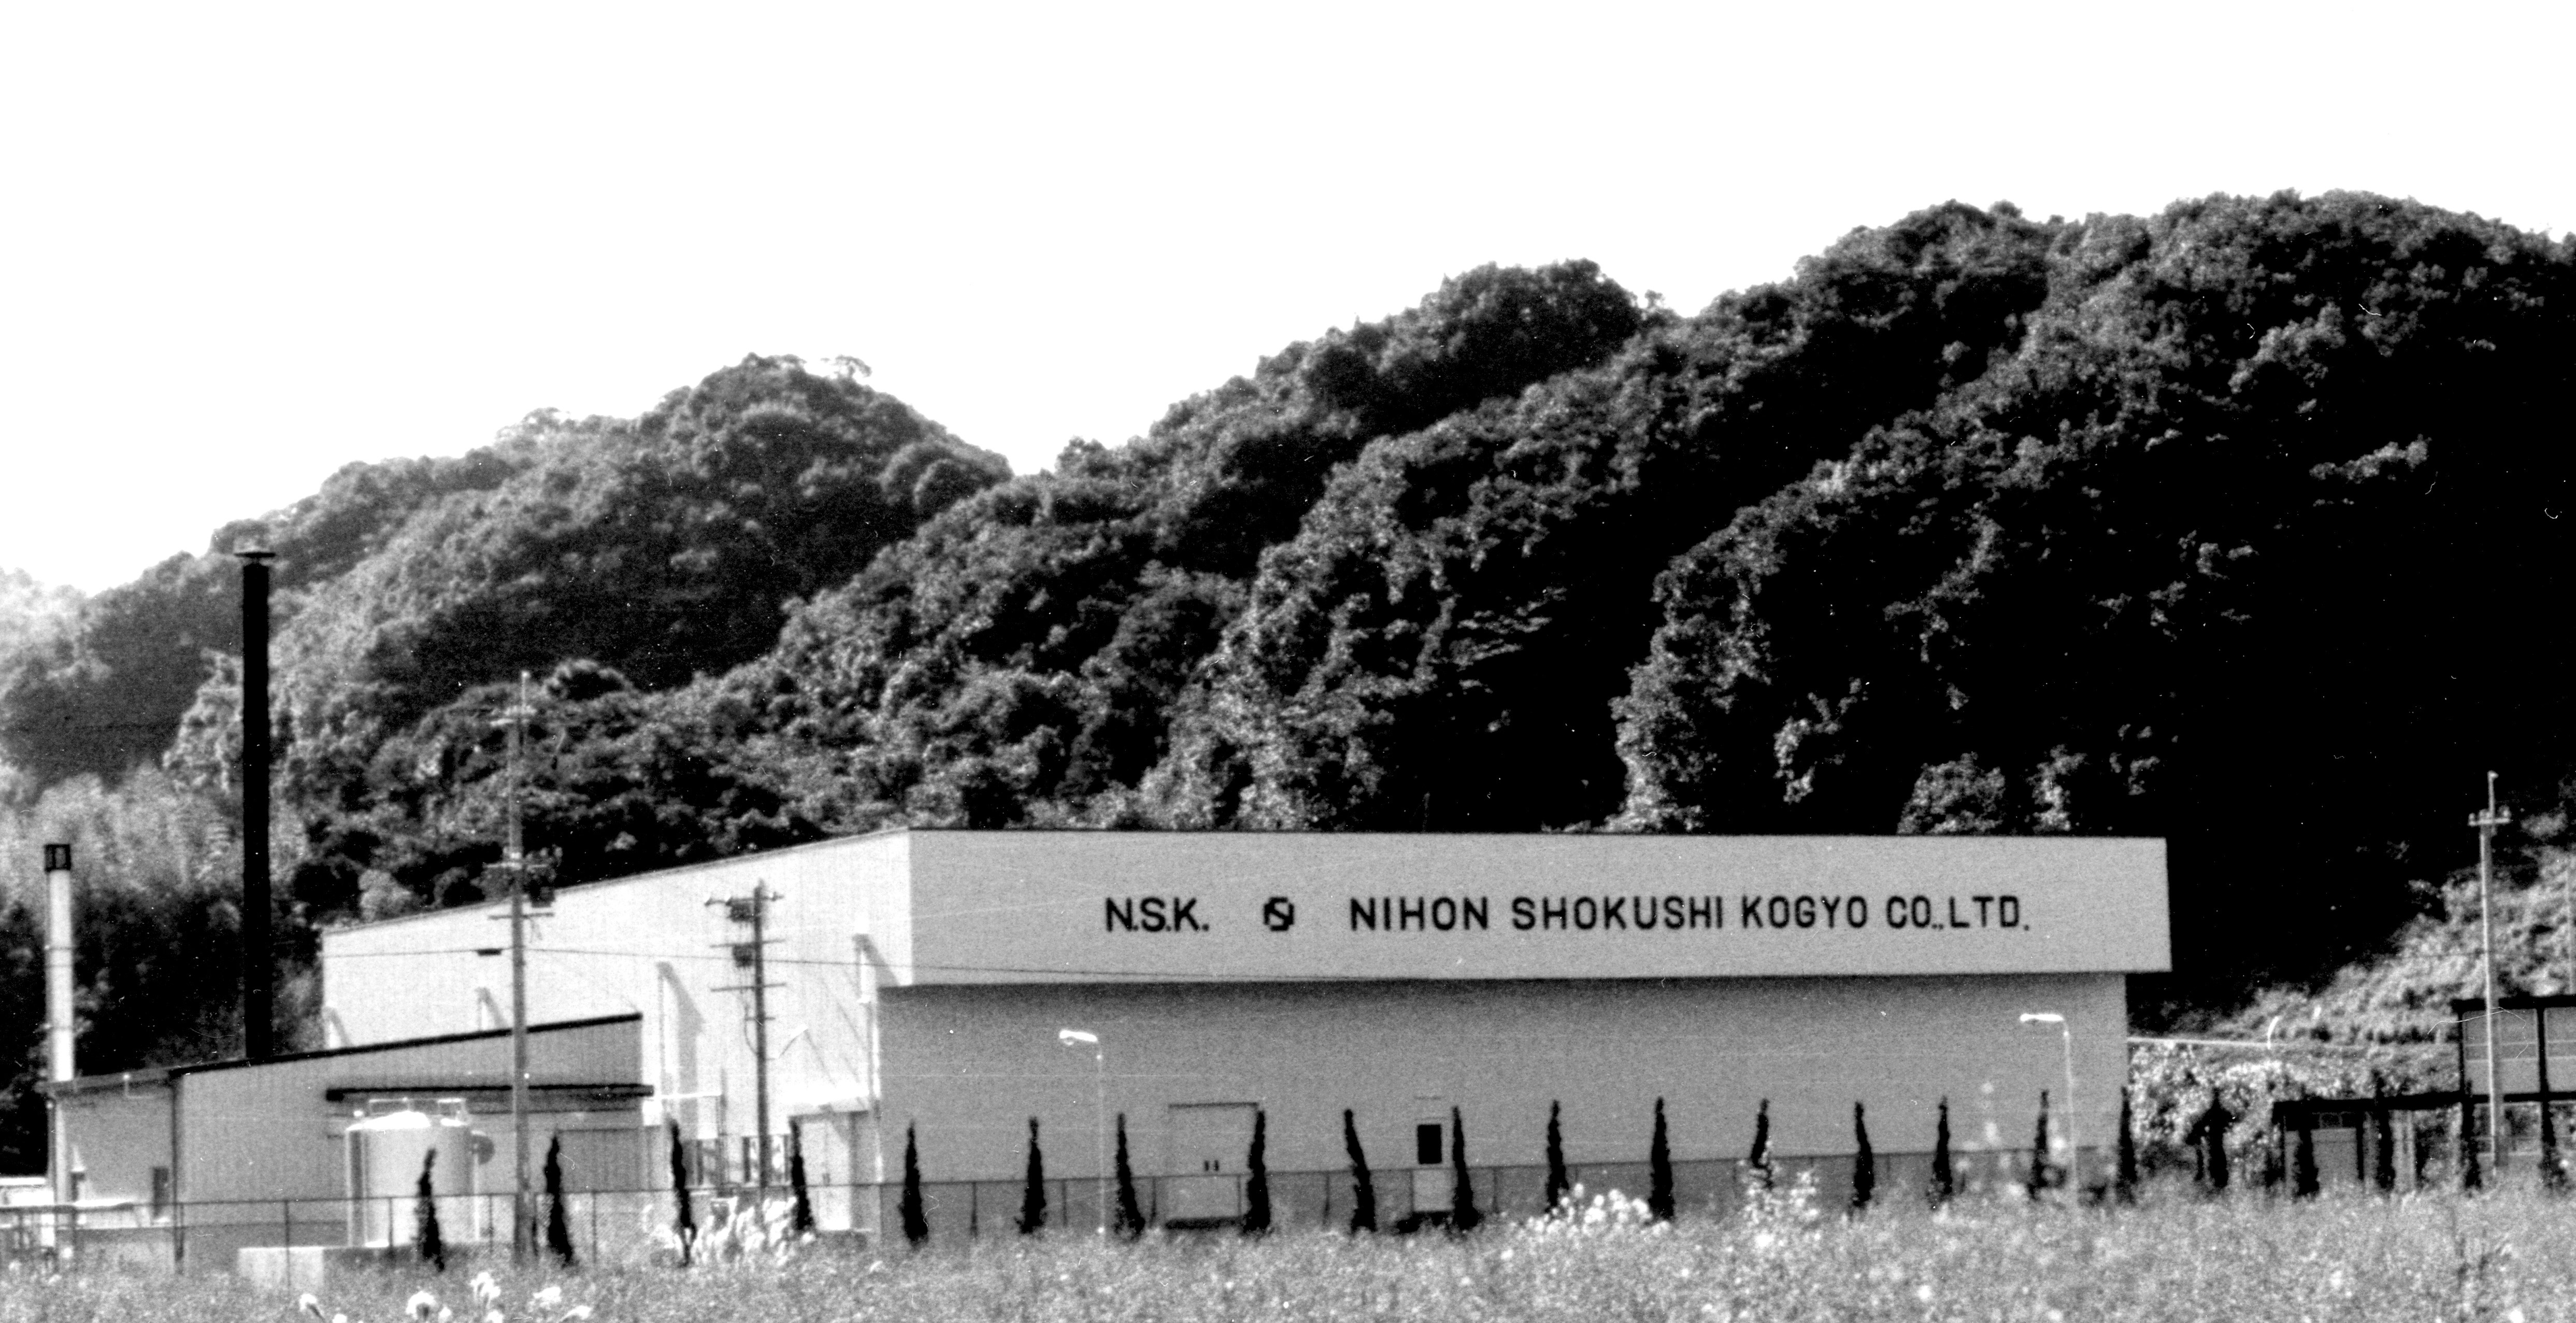 1978年、抽出部門の増産体制を目的として日本食資工業株式会社を長崎県北松浦郡（現佐世保市）小佐々町に設立。​